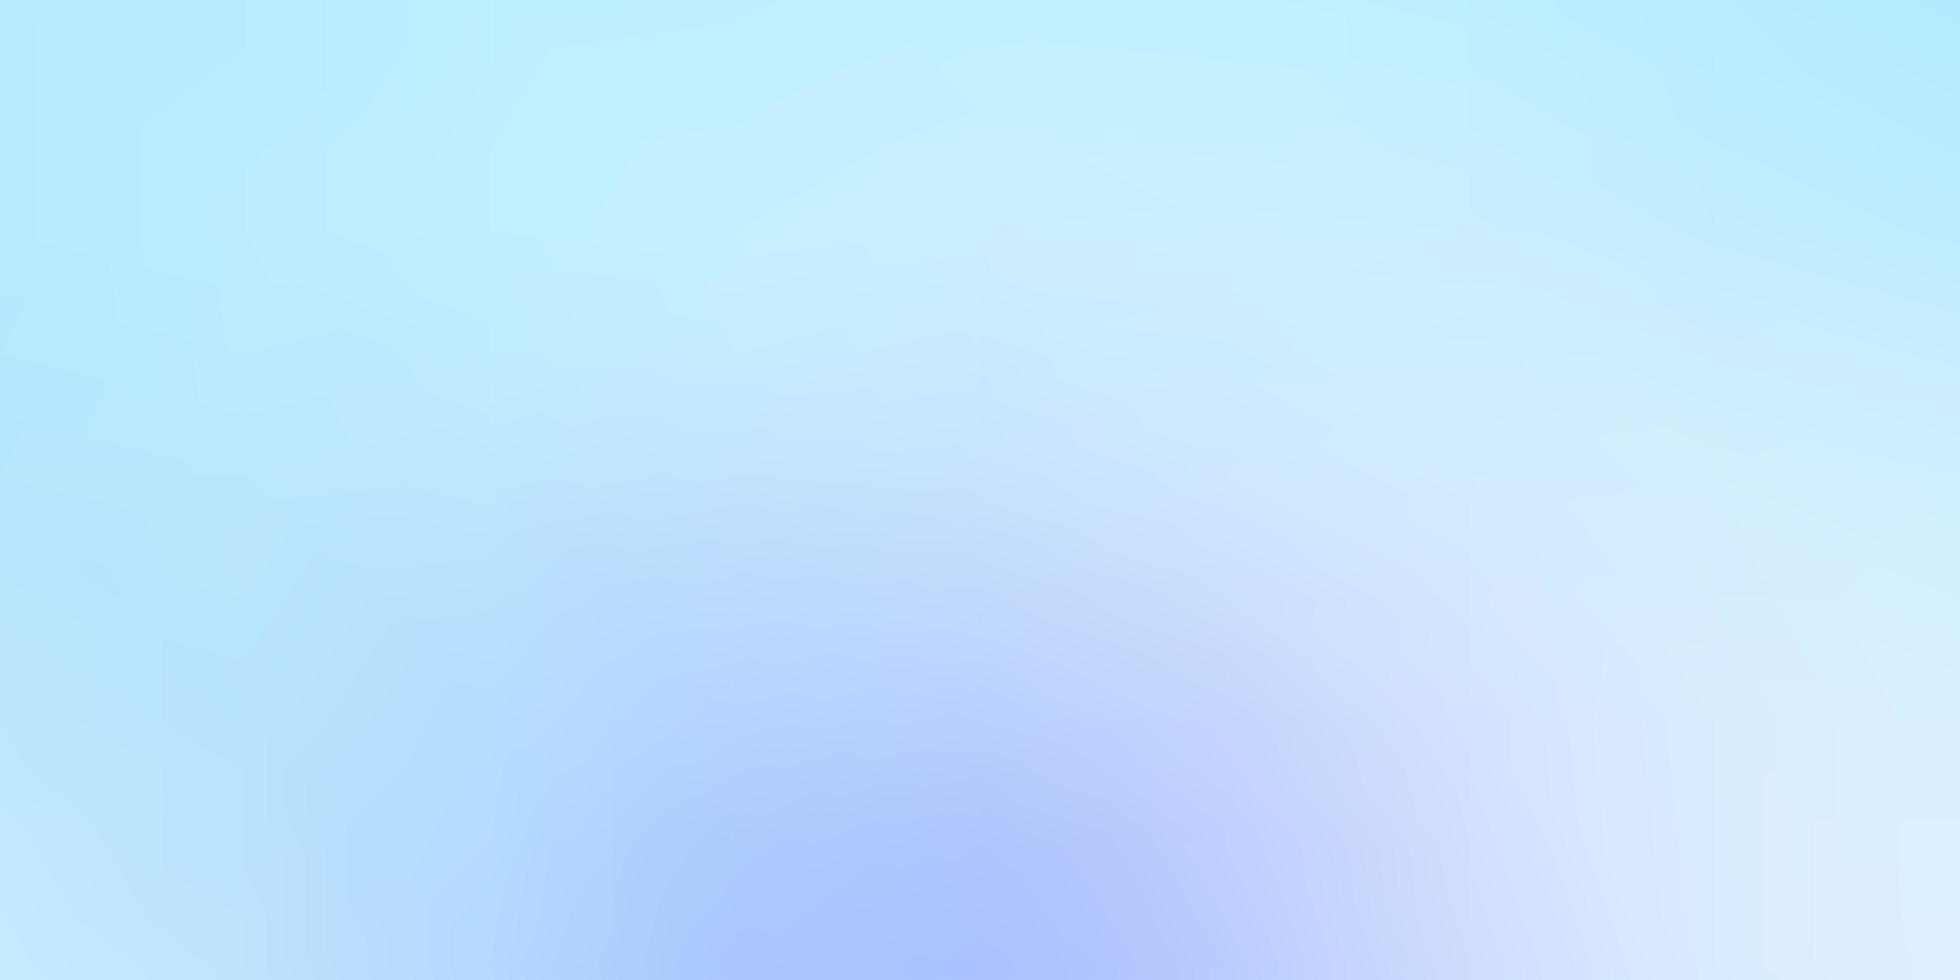 layout abstrato do vetor rosa claro azul ilustração colorida em estilo de meio-tom com gradiente melhor design para o seu negócio